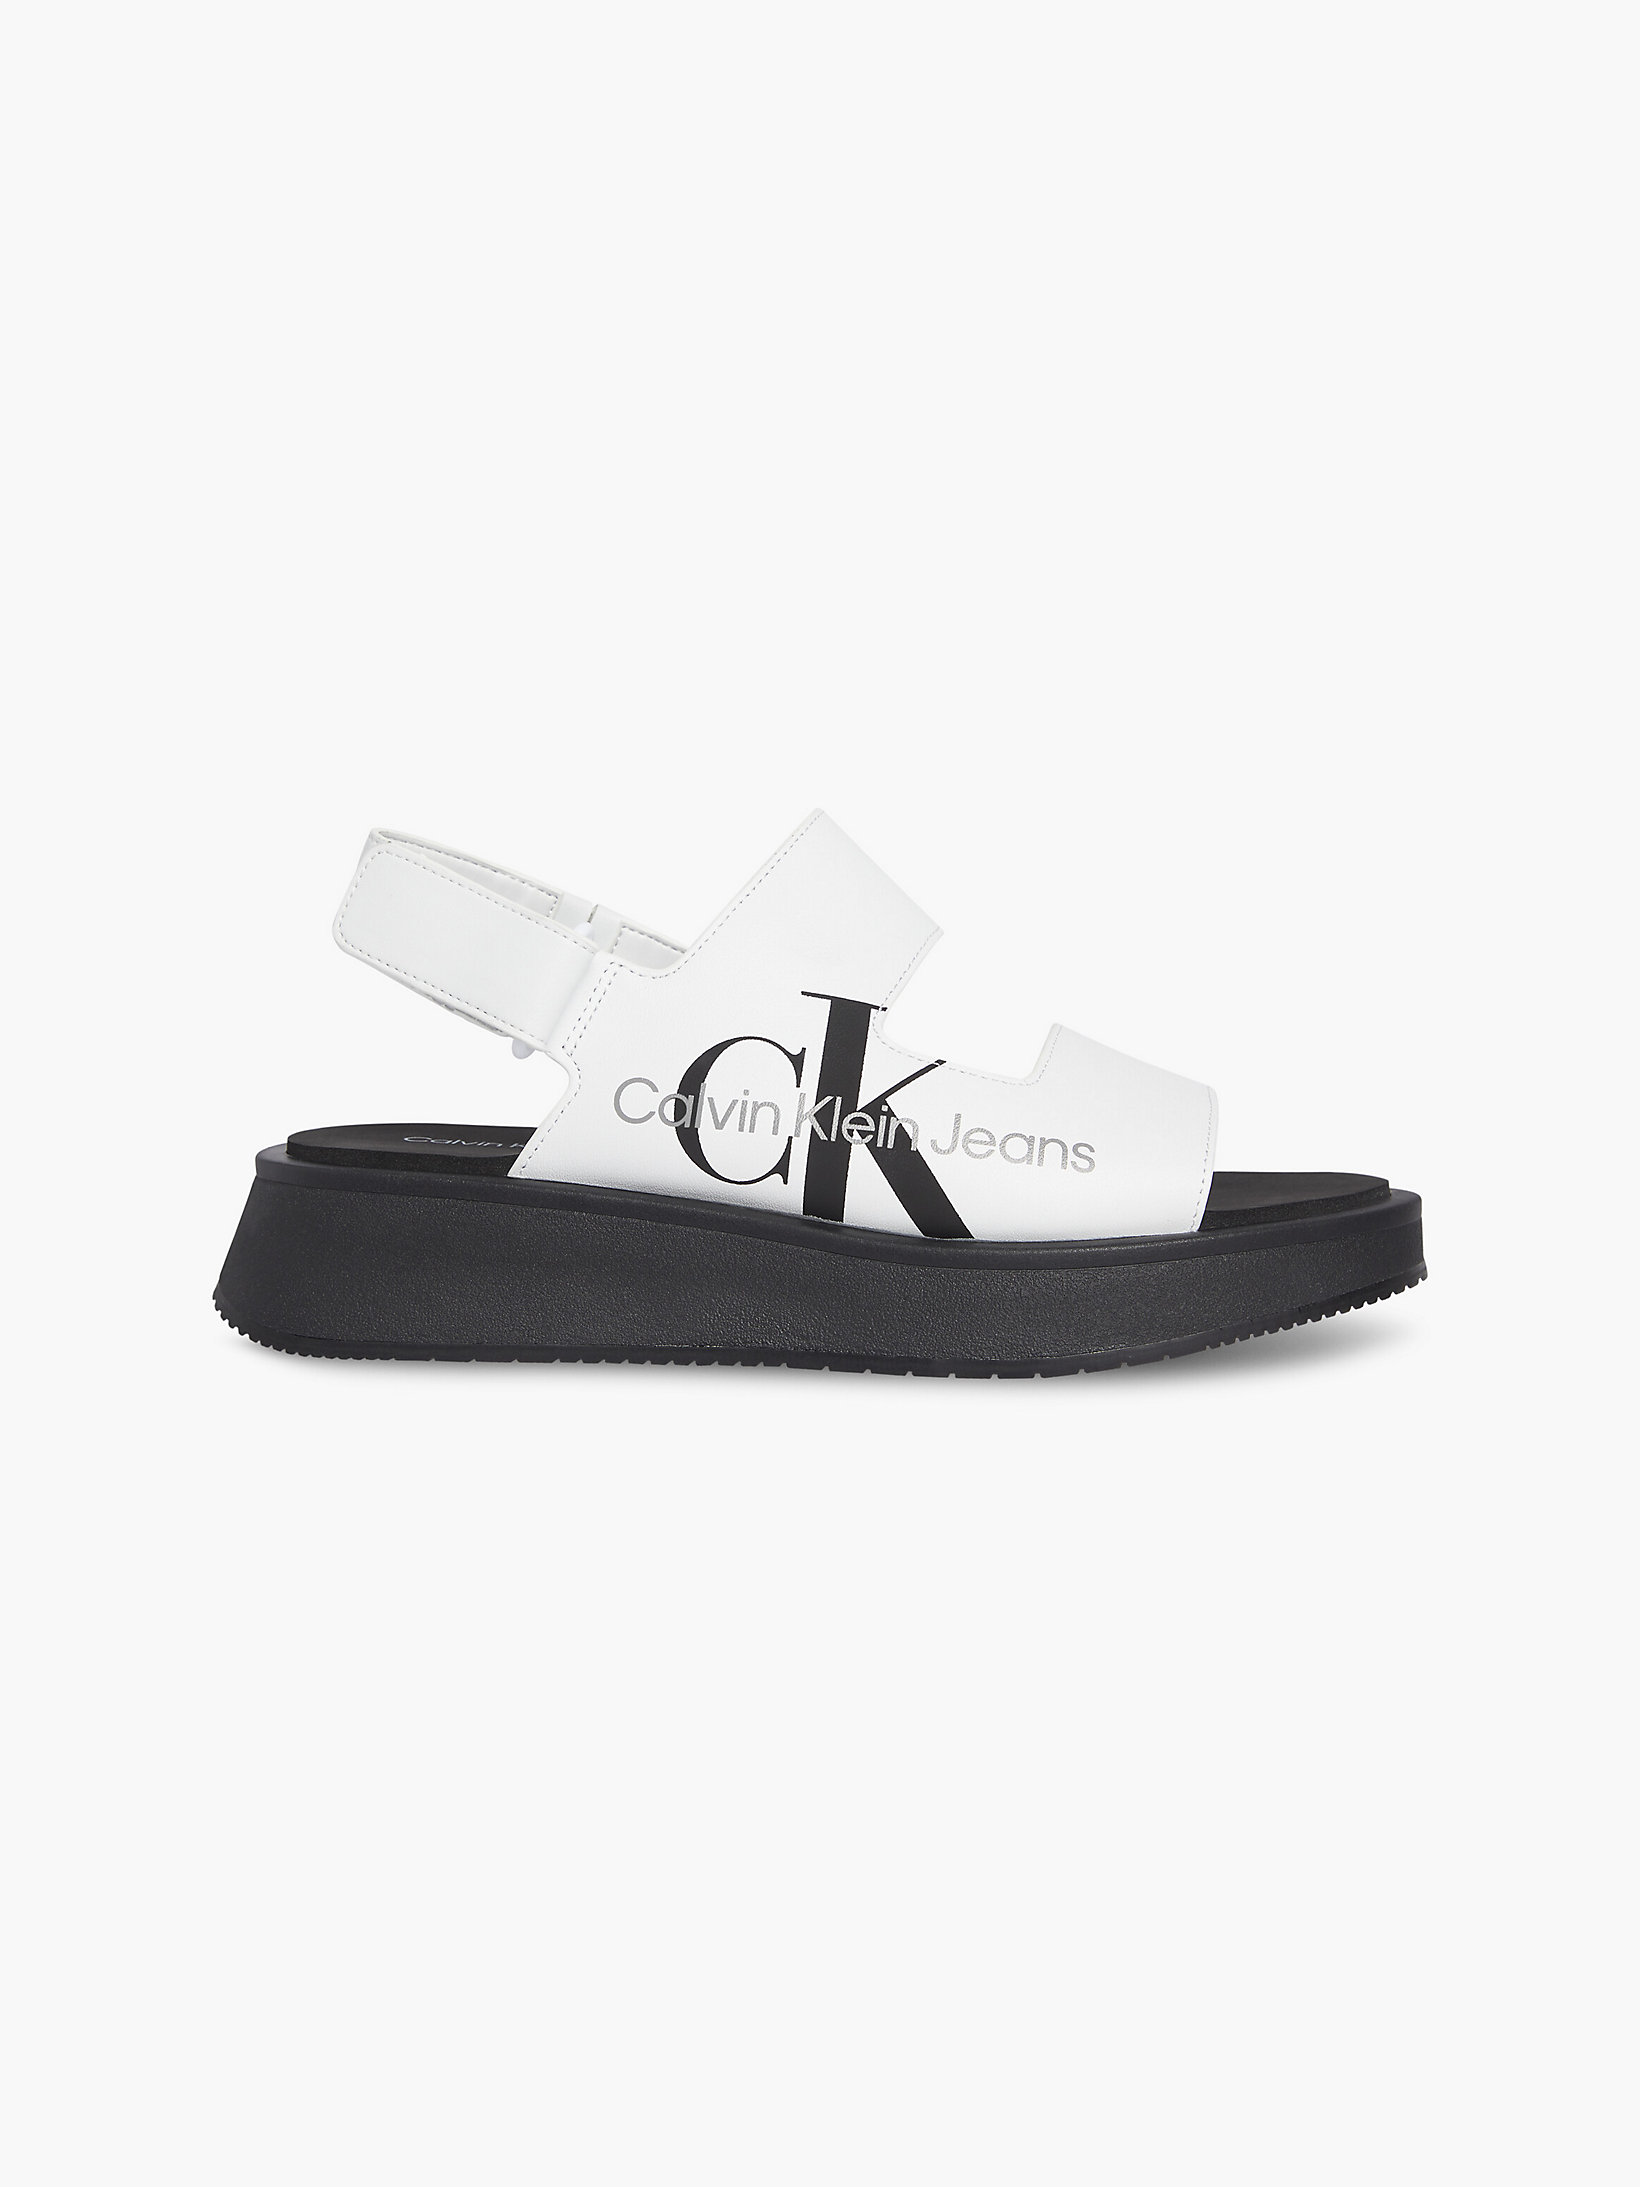 Bright White Leather Sandals undefined women Calvin Klein